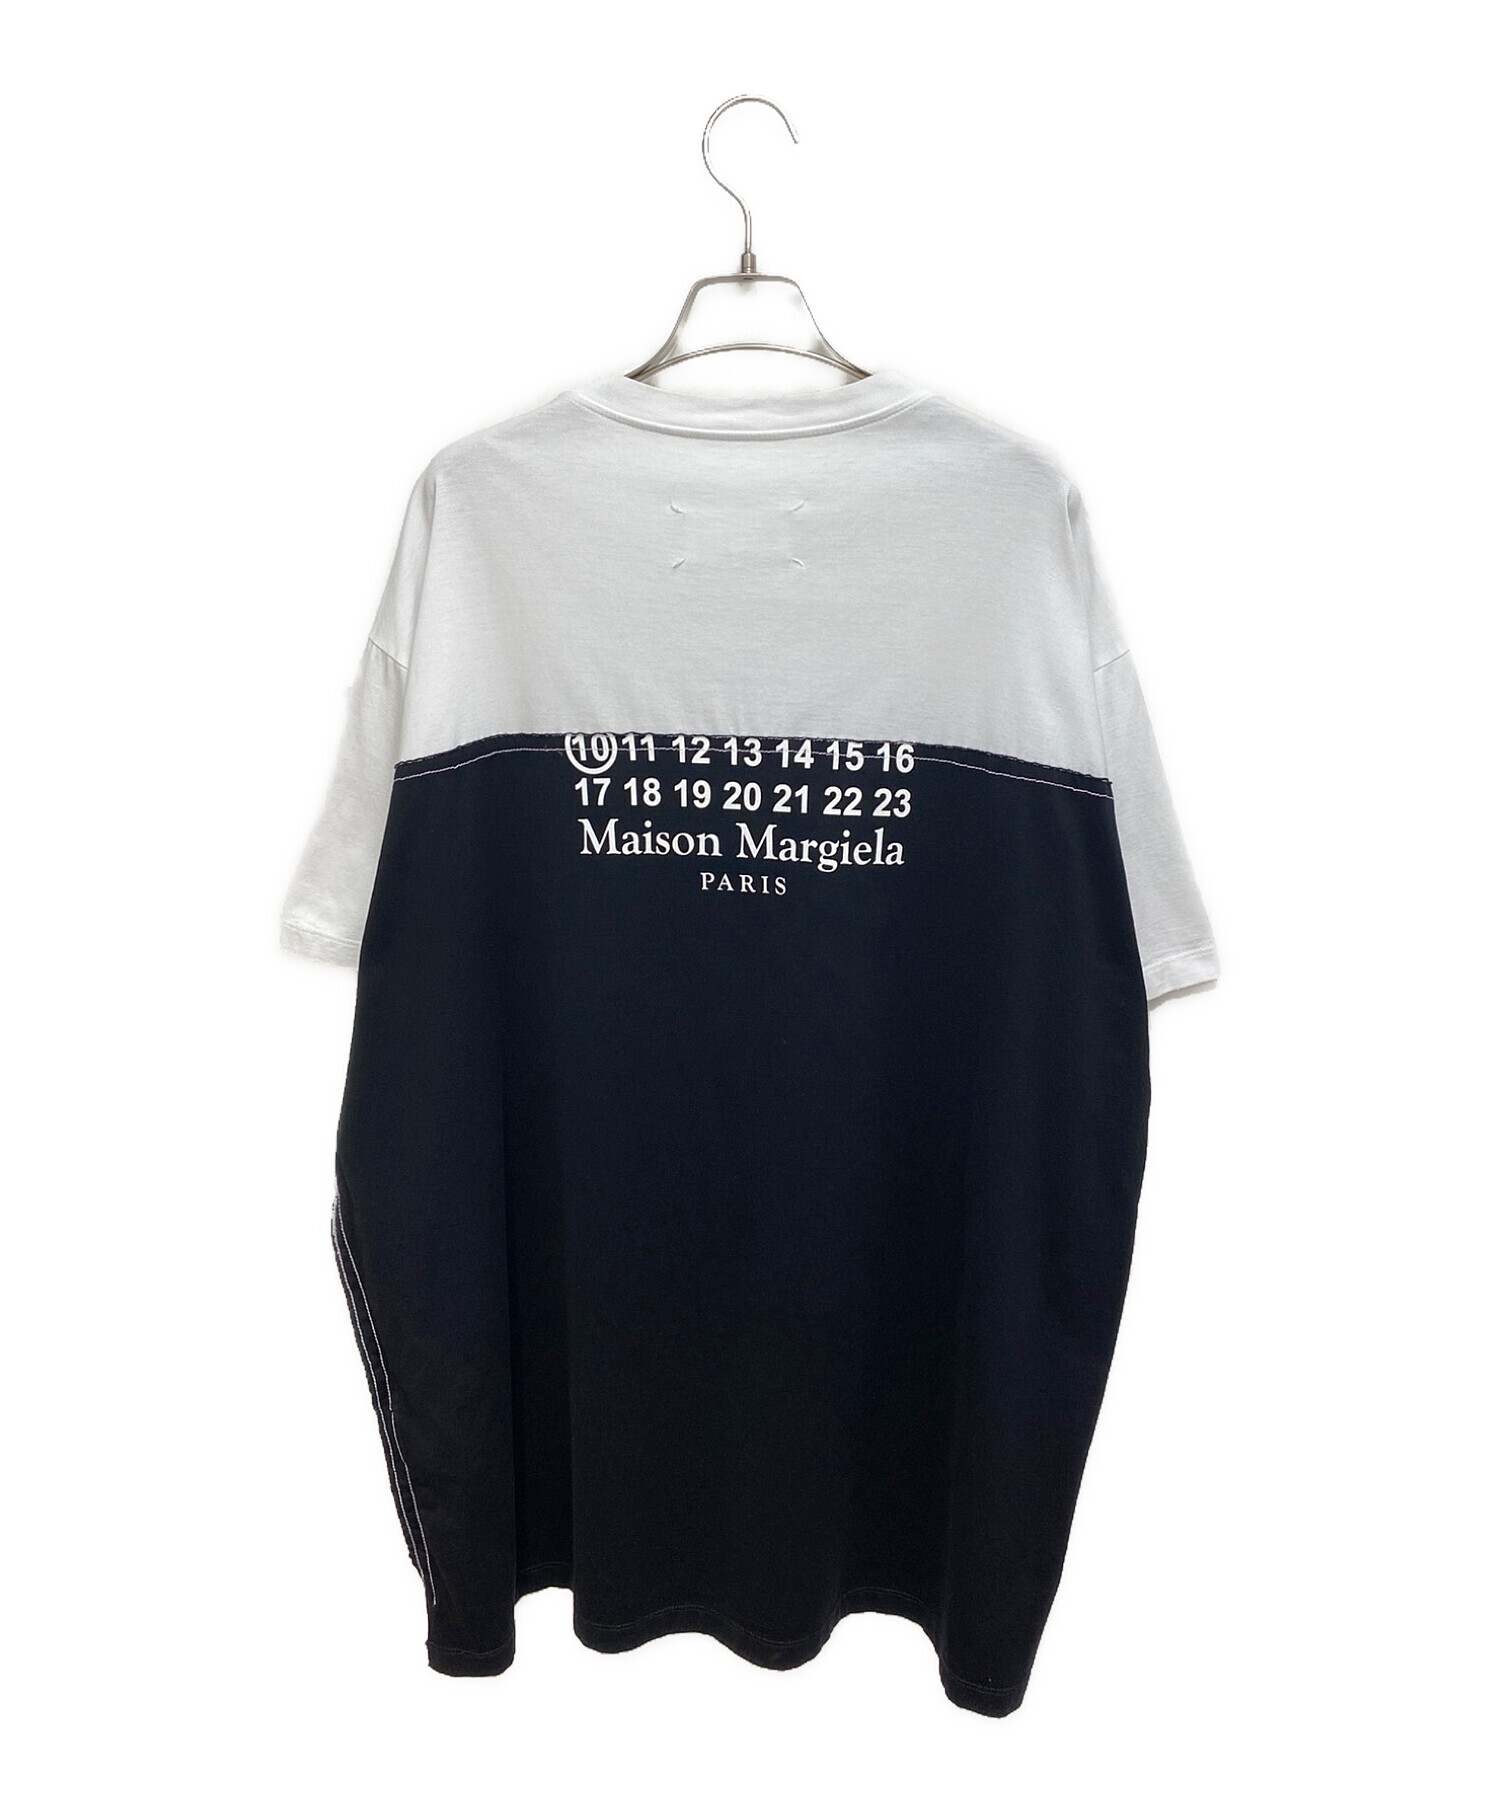 Maison Margiela (メゾンマルジェラ) ナンバーロゴTシャツ ホワイト×ブラック サイズ:48